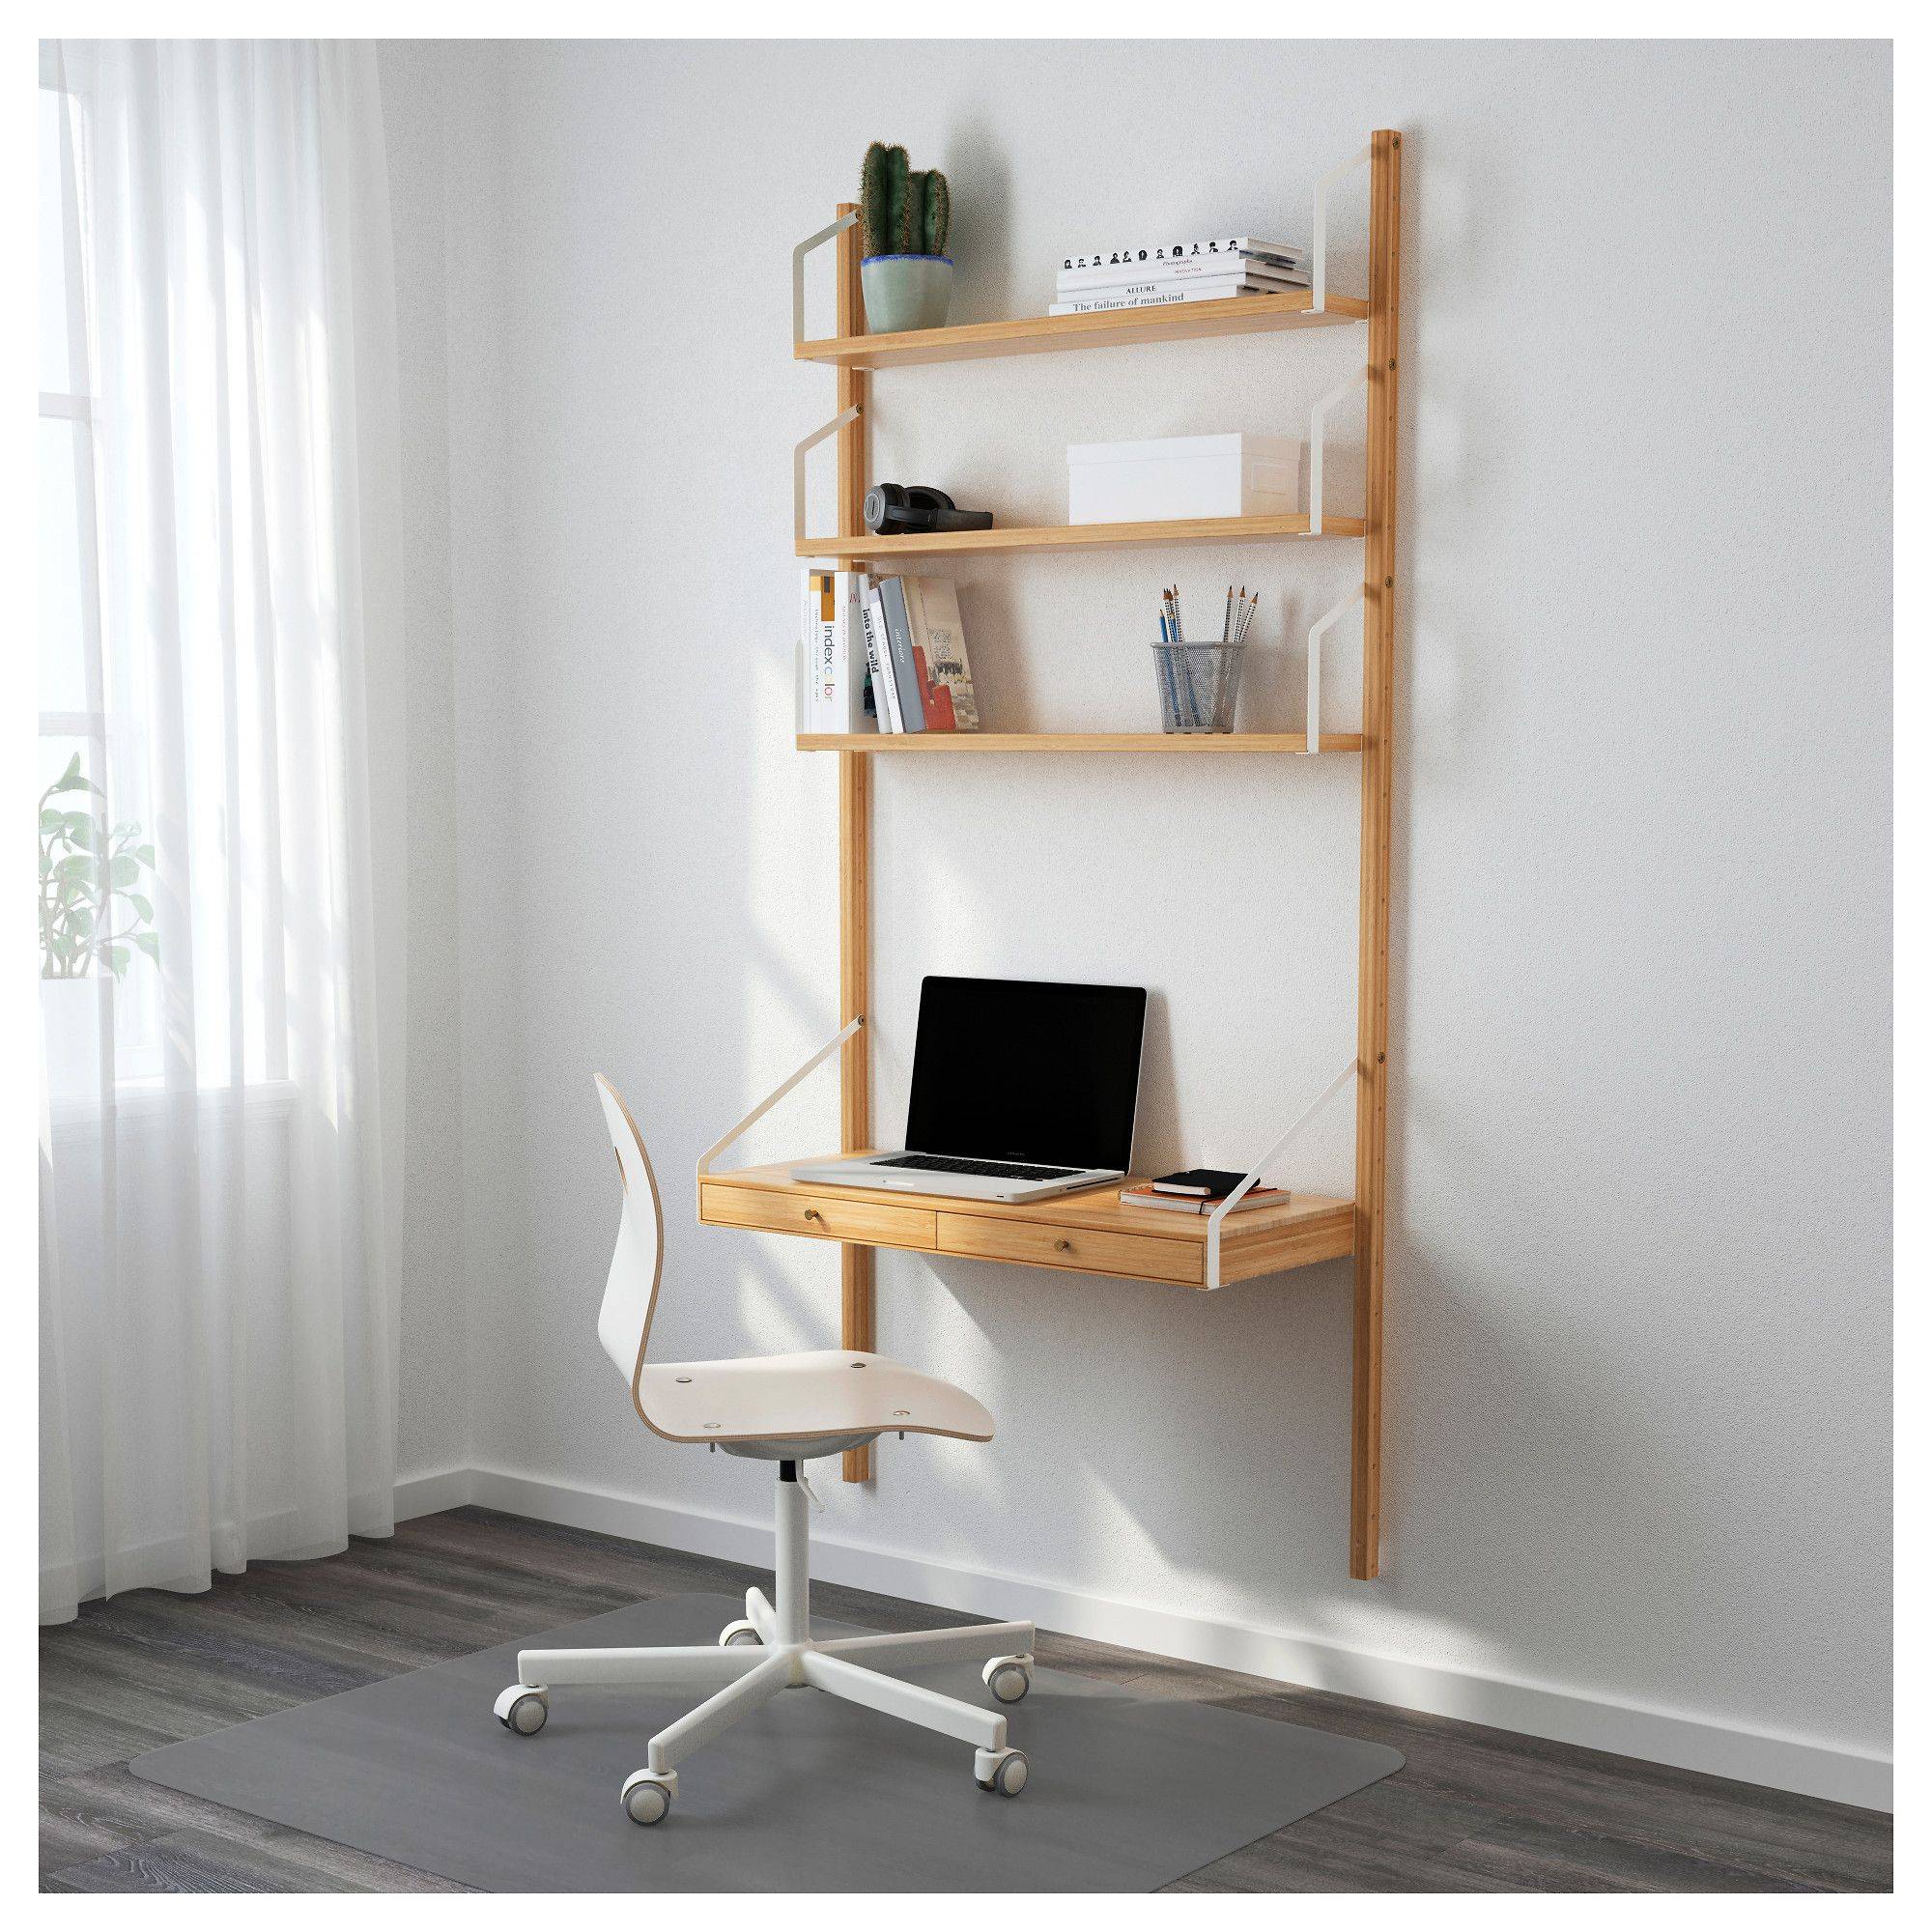 Best Of Ladder Desk Ikea Home Design